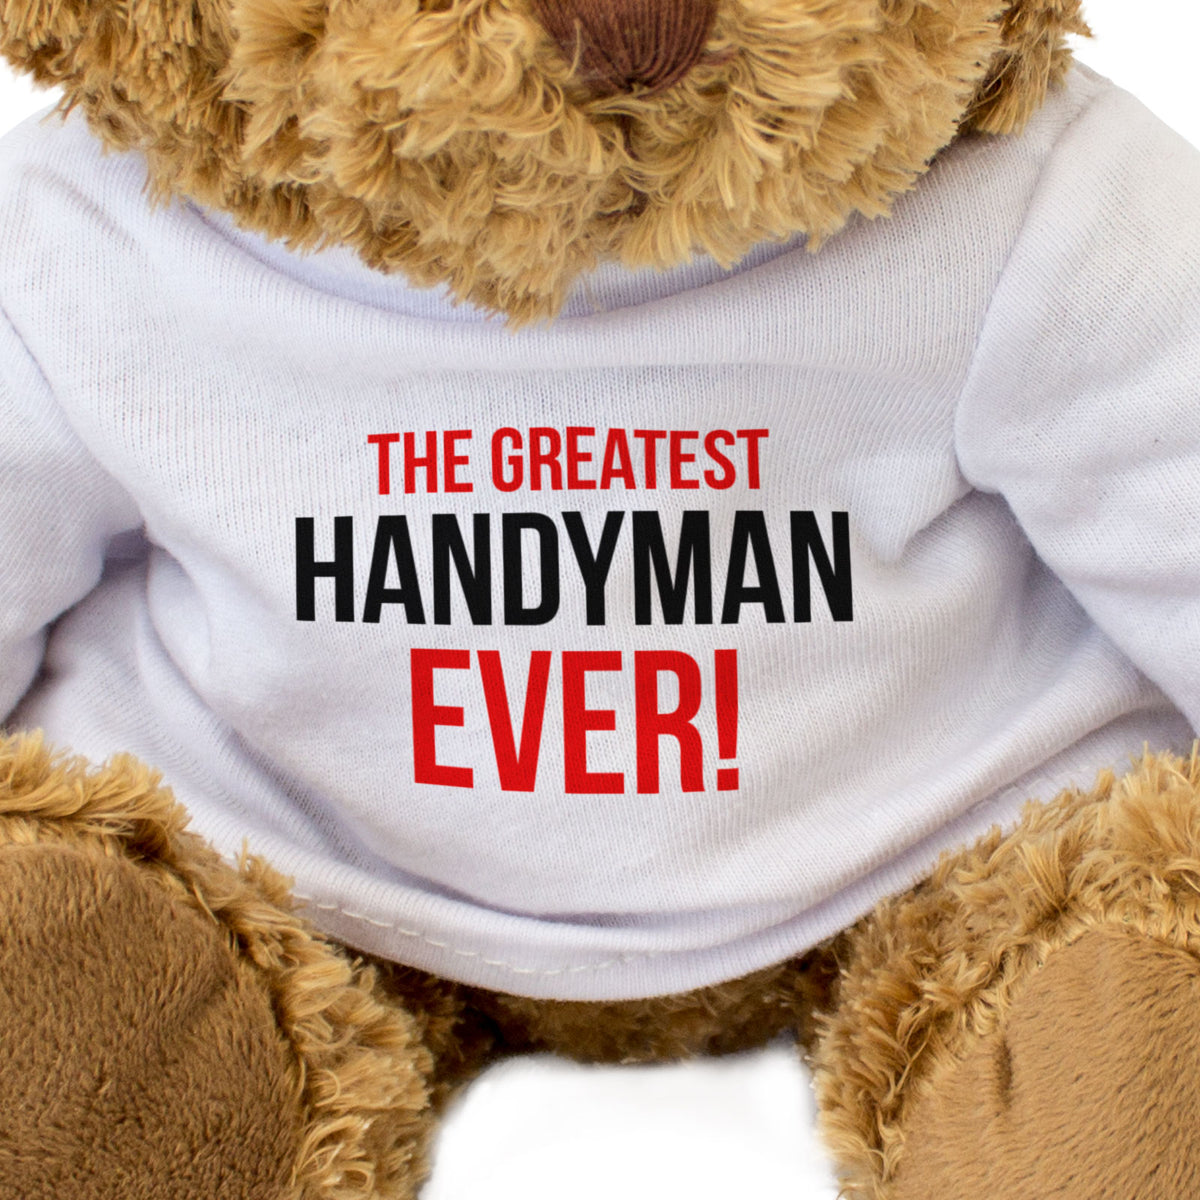 The Greatest Handyman Ever - Teddy Bear